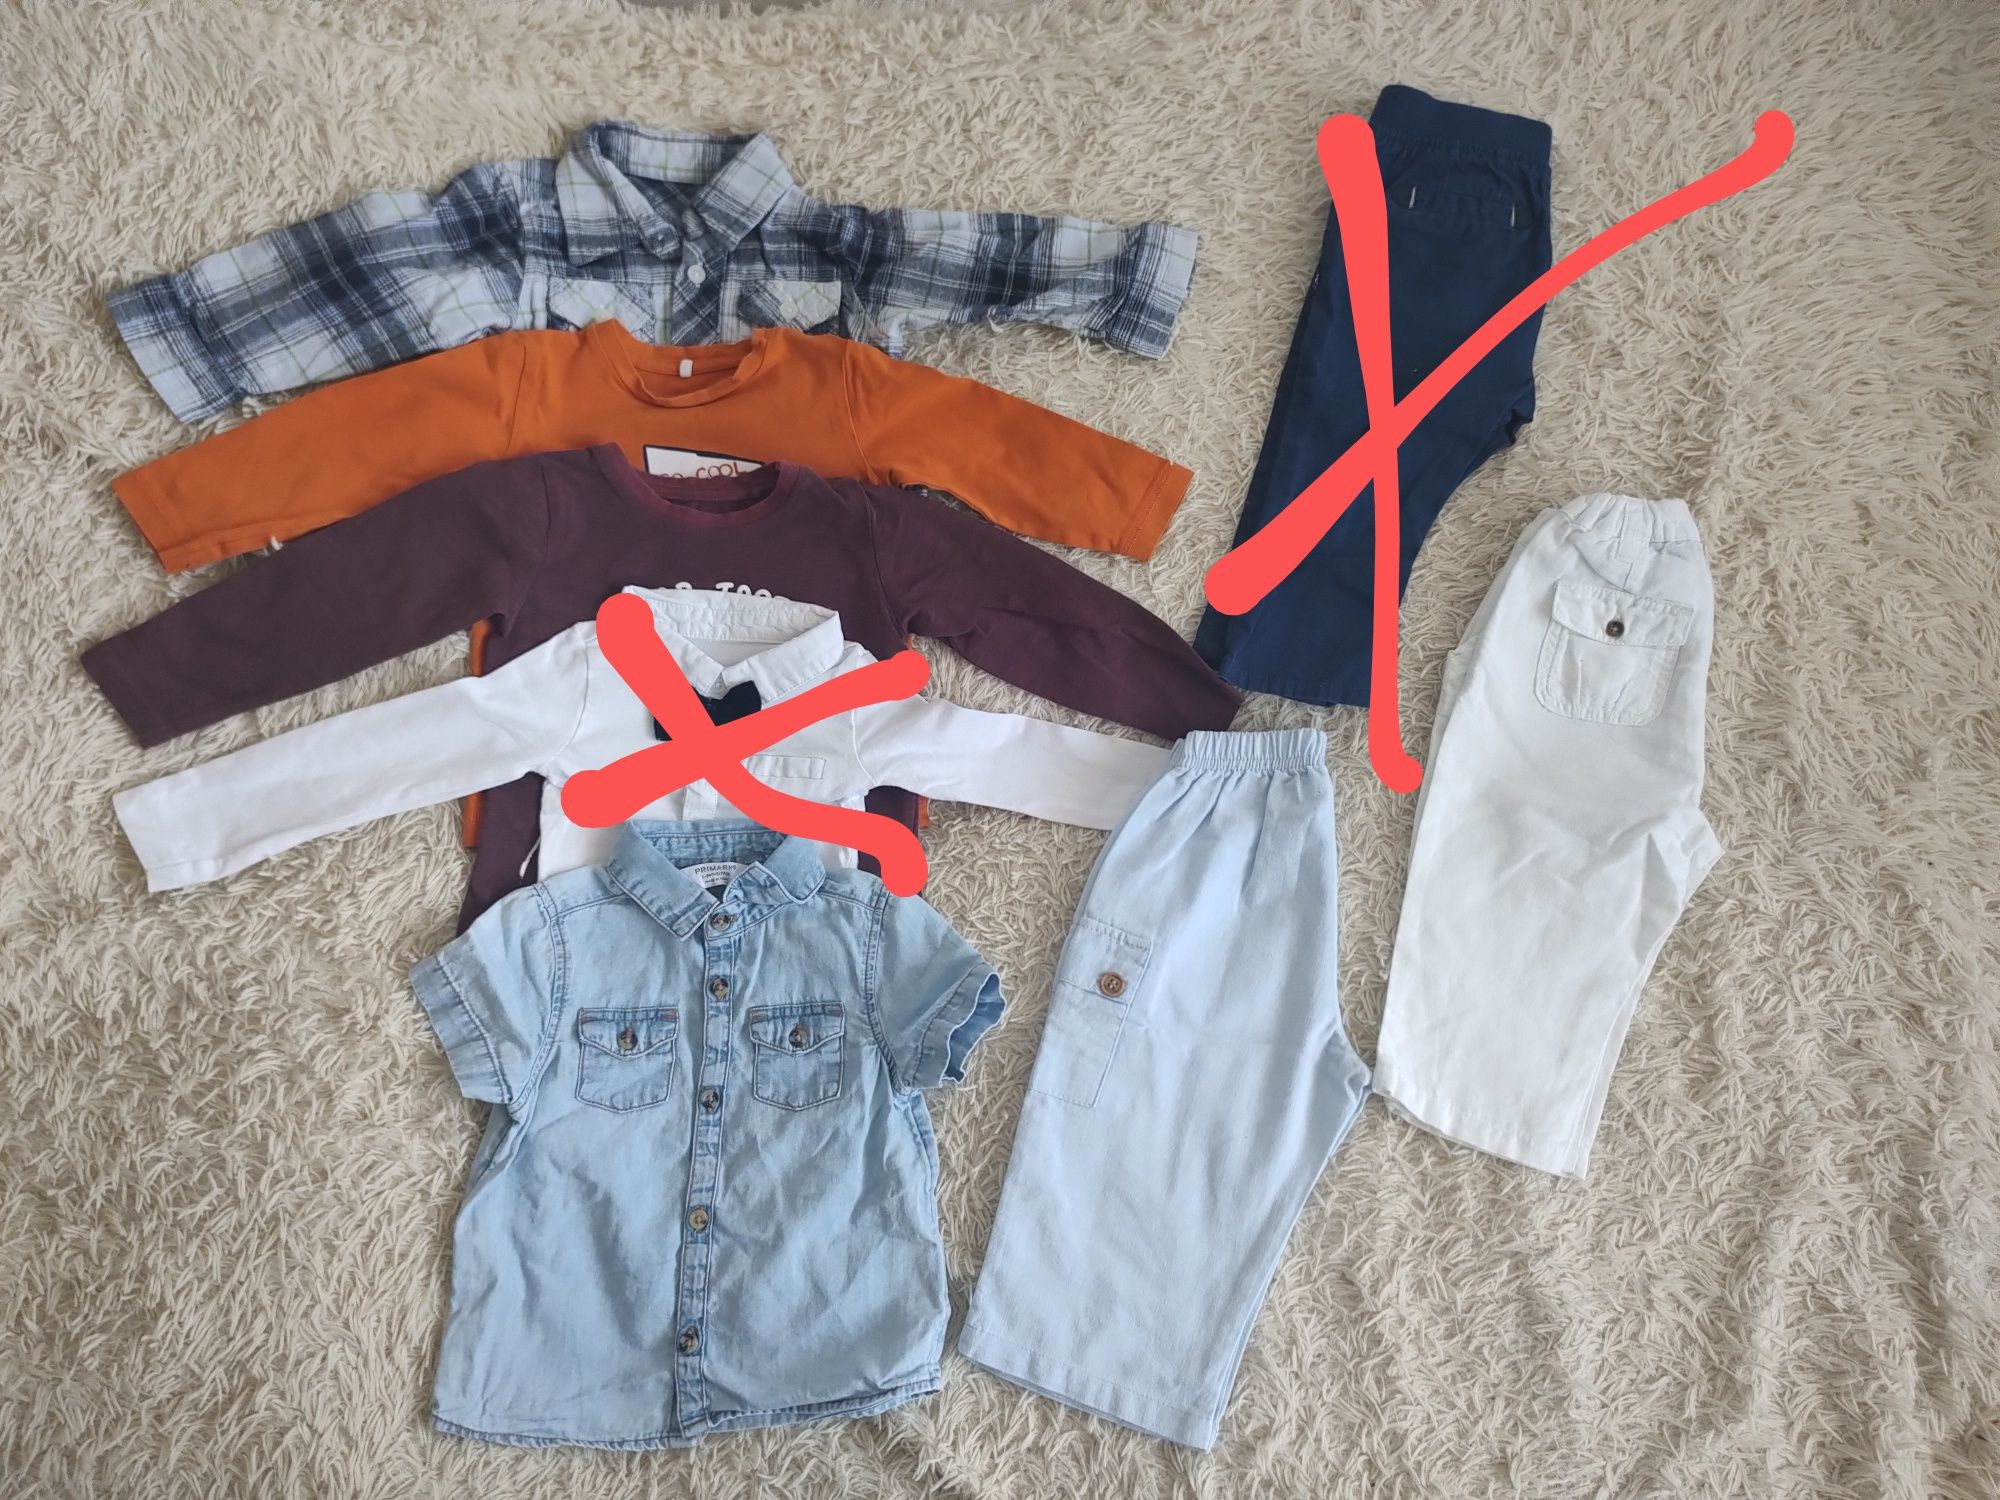 Paka ubrań dla chłopca, koszula, spodnie , bluzki, rozmiar 74